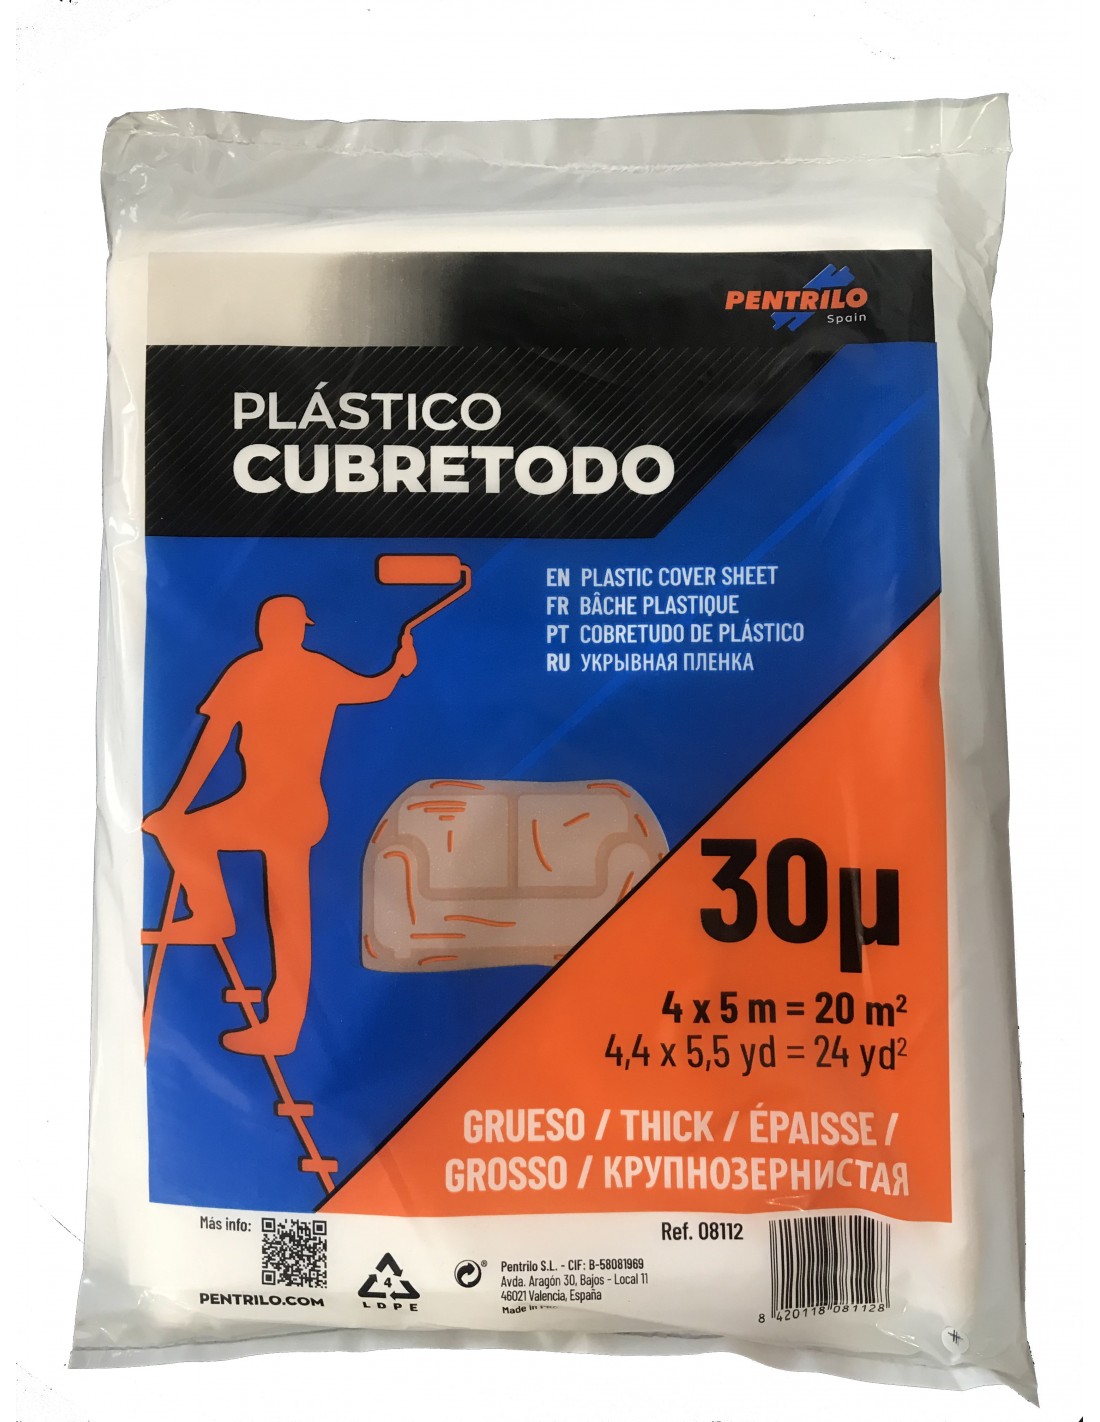 Plástico cubretodo - Productos